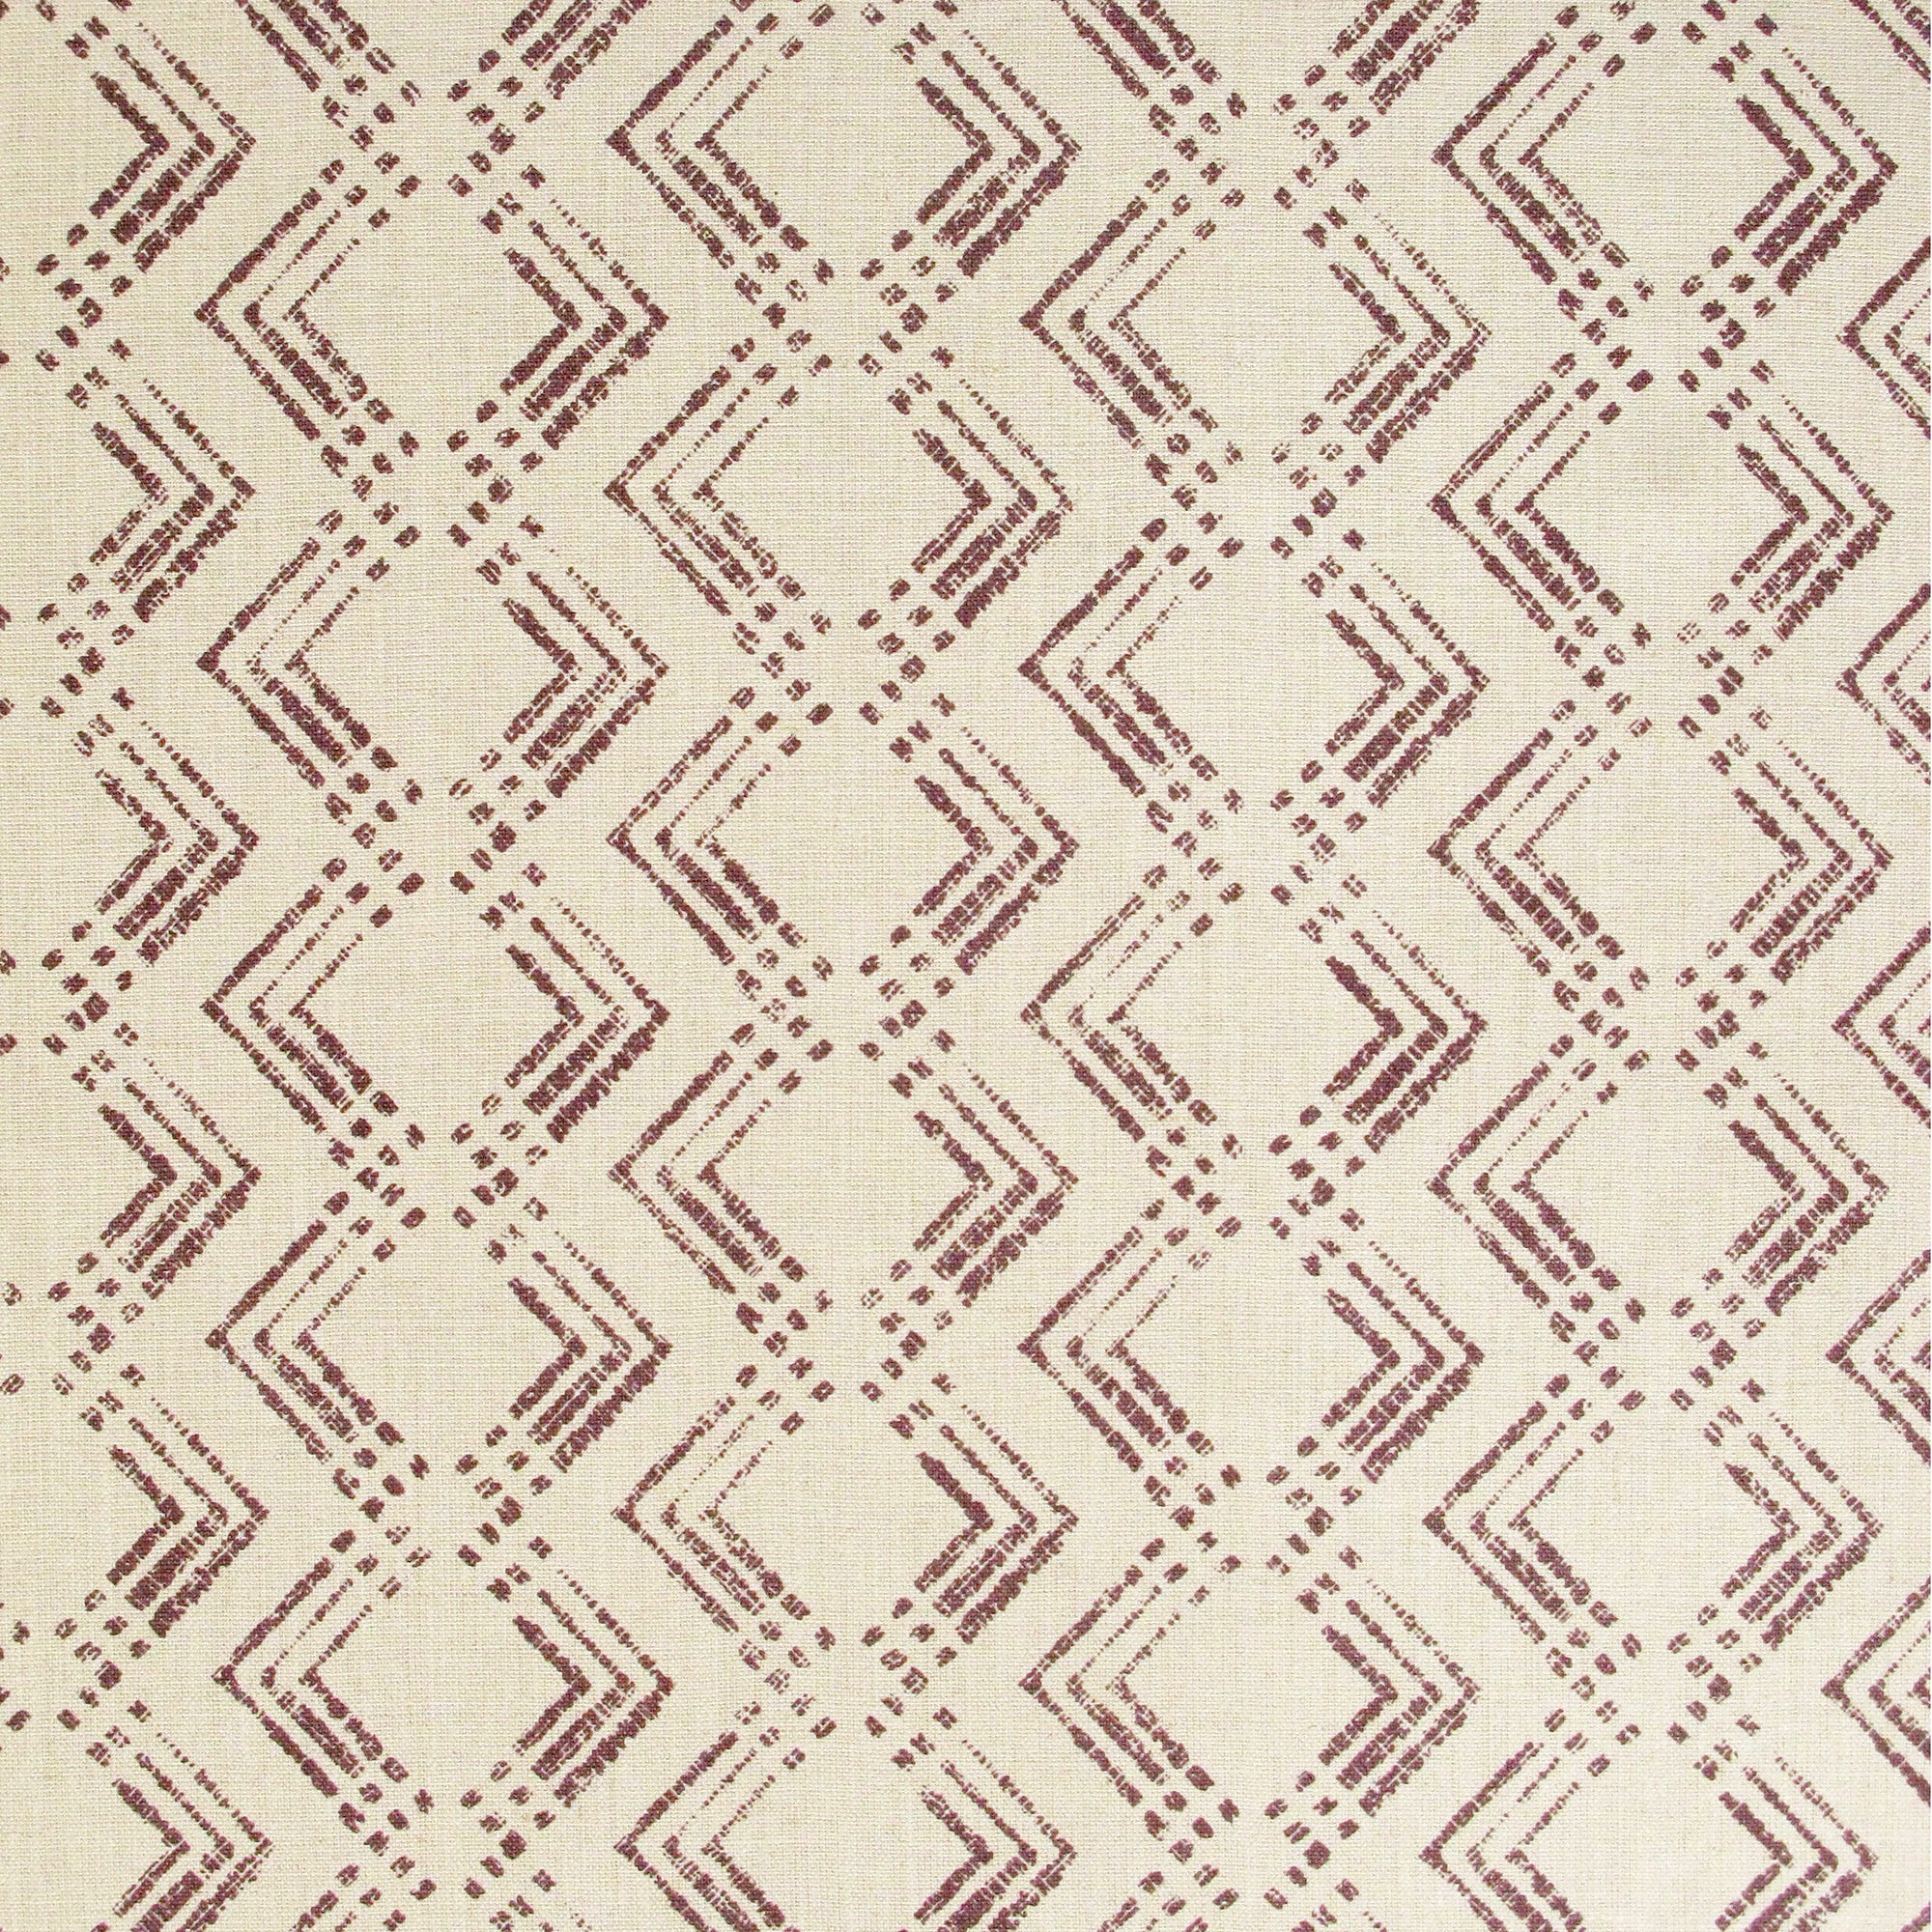 Fabric in a diamond grid pattern in maroon on a tan field.